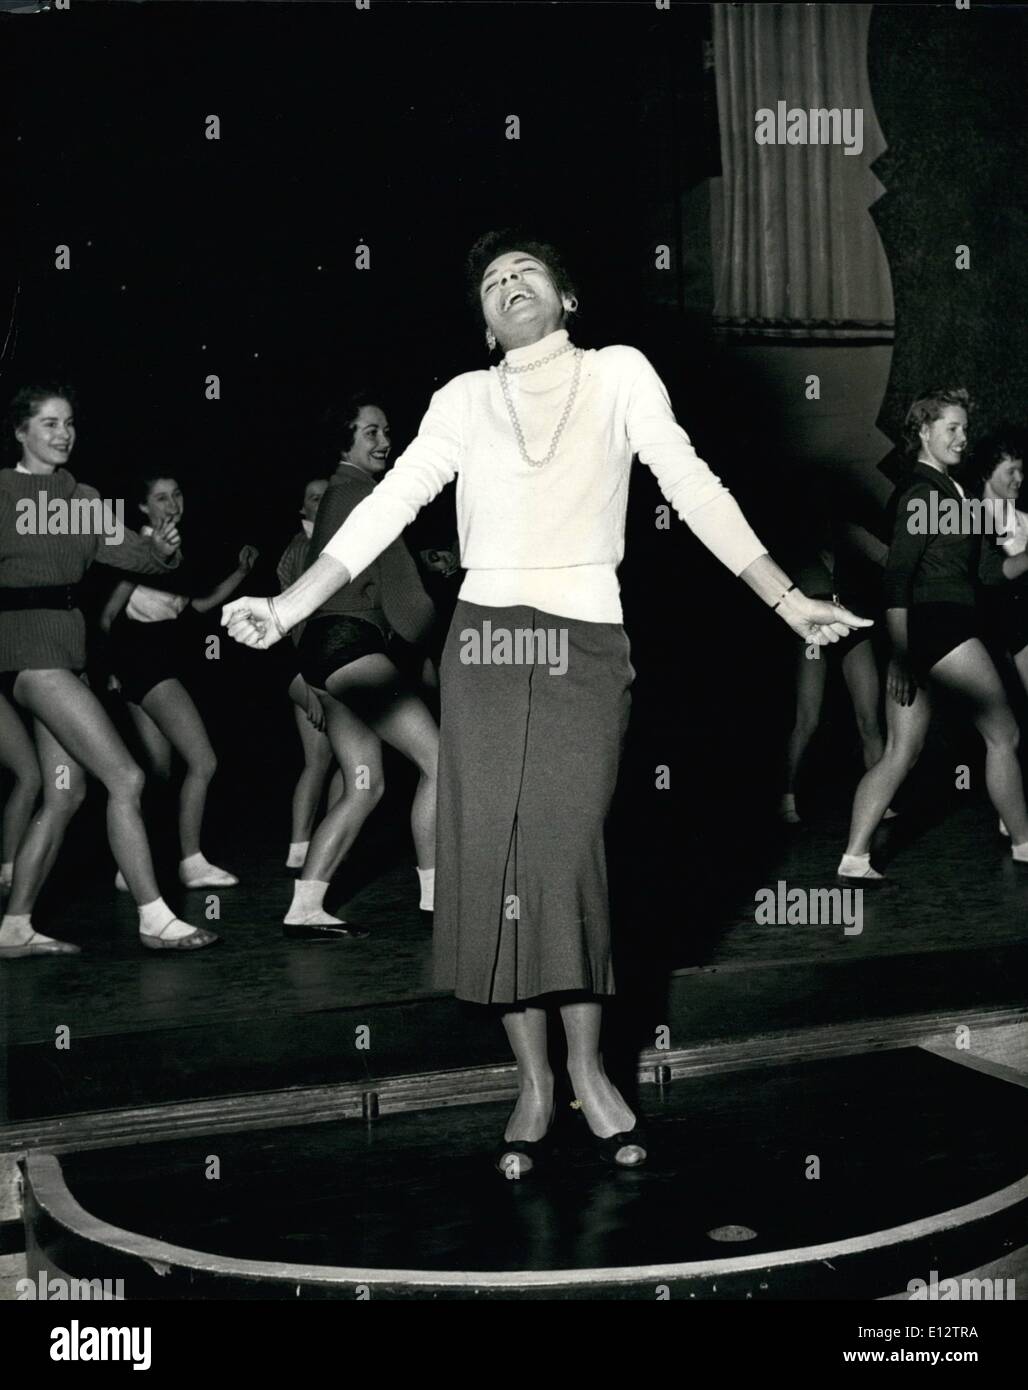 25 février 2012 - Shirley Bassey - LONDON'S NEW BLUES SINGER. Shirley passe par l'un des numéros pour son nouveau spectacle à l'Adelphi dans lequel elle sera la vedette avec Al Lire. La fille de CARDIFF'S ''TIGER BAY'' POUR LAS VEGAS ET HOLLYWOOD SHIRLEY BASSEY SUR LE SKYWAY À SUCCÈS DANS LES ÉTATS. La couleur de la Grande-Bretagne récemment augmenté de 18 ans, chanteur de blues de la région de dock de taudis Cardiff (Pays de Galles) est bientôt à la star à Las Vegas. Elle part pour l'Amérique latine à la mi-janvier et après avec à Las Vegas se poursuivra pour essais films à Hollywood Banque D'Images